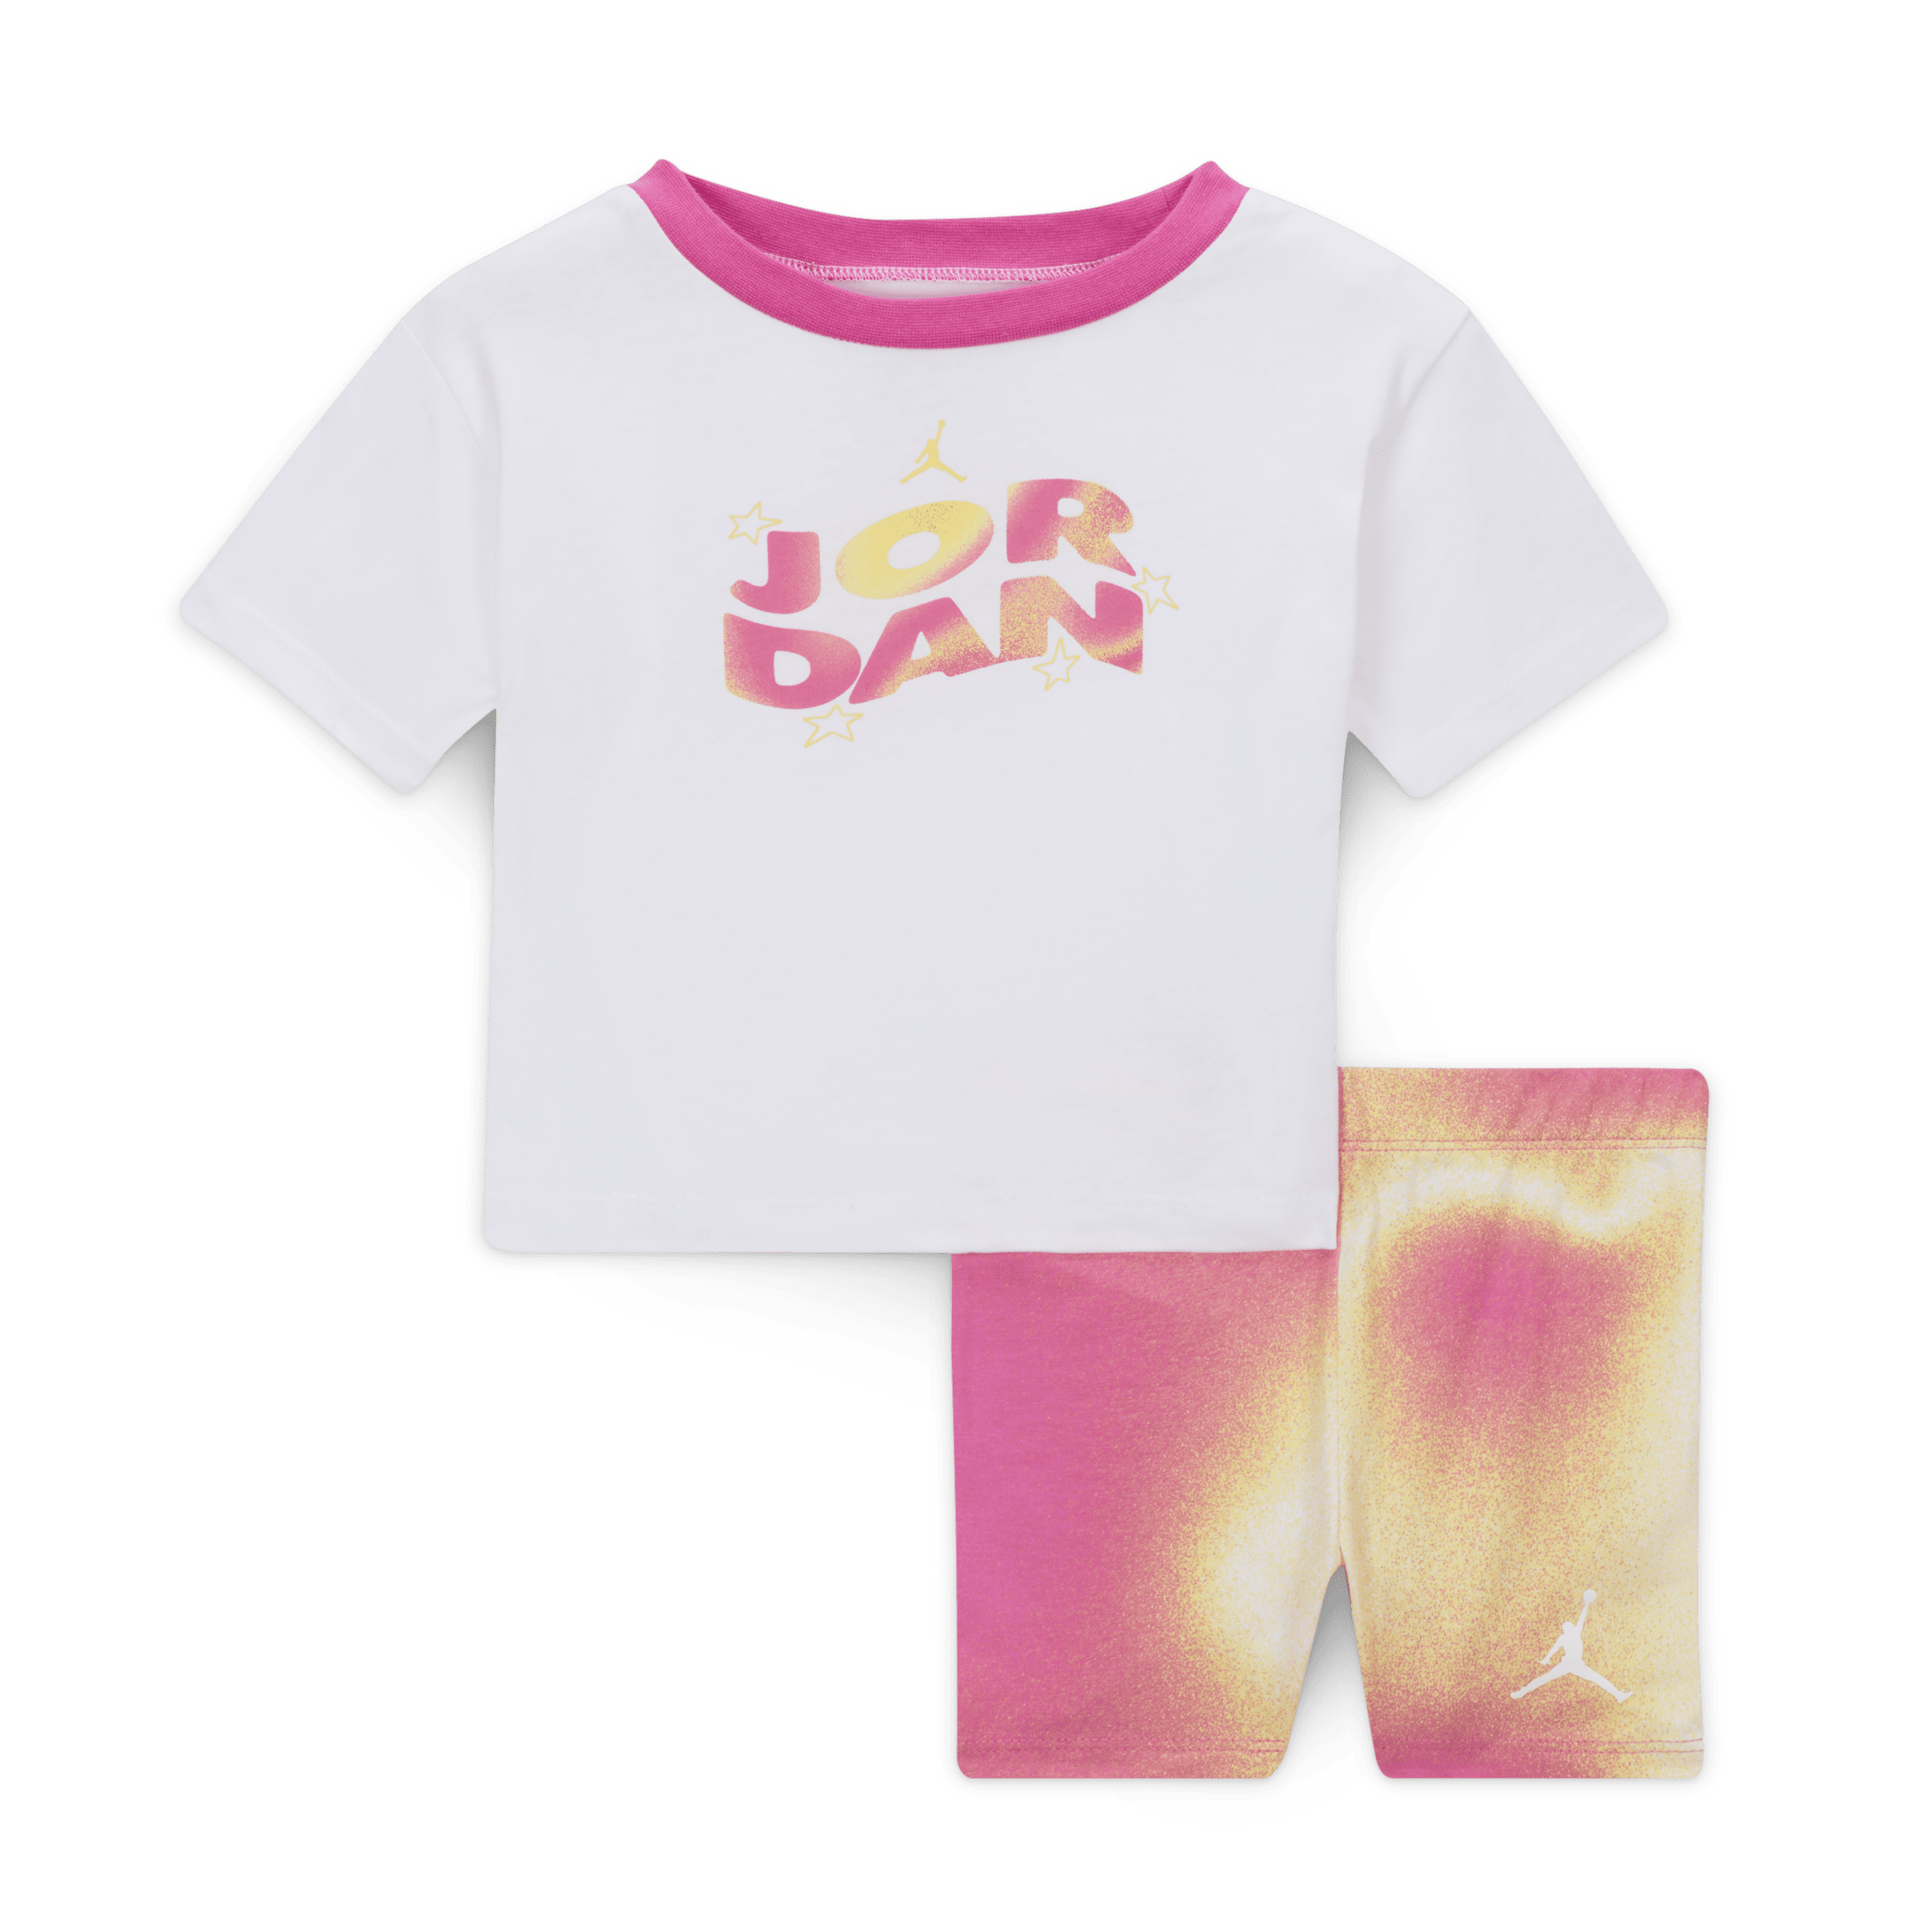 Jordan Lemonade Stand shortsset voor baby's (12-24 maanden) Roze